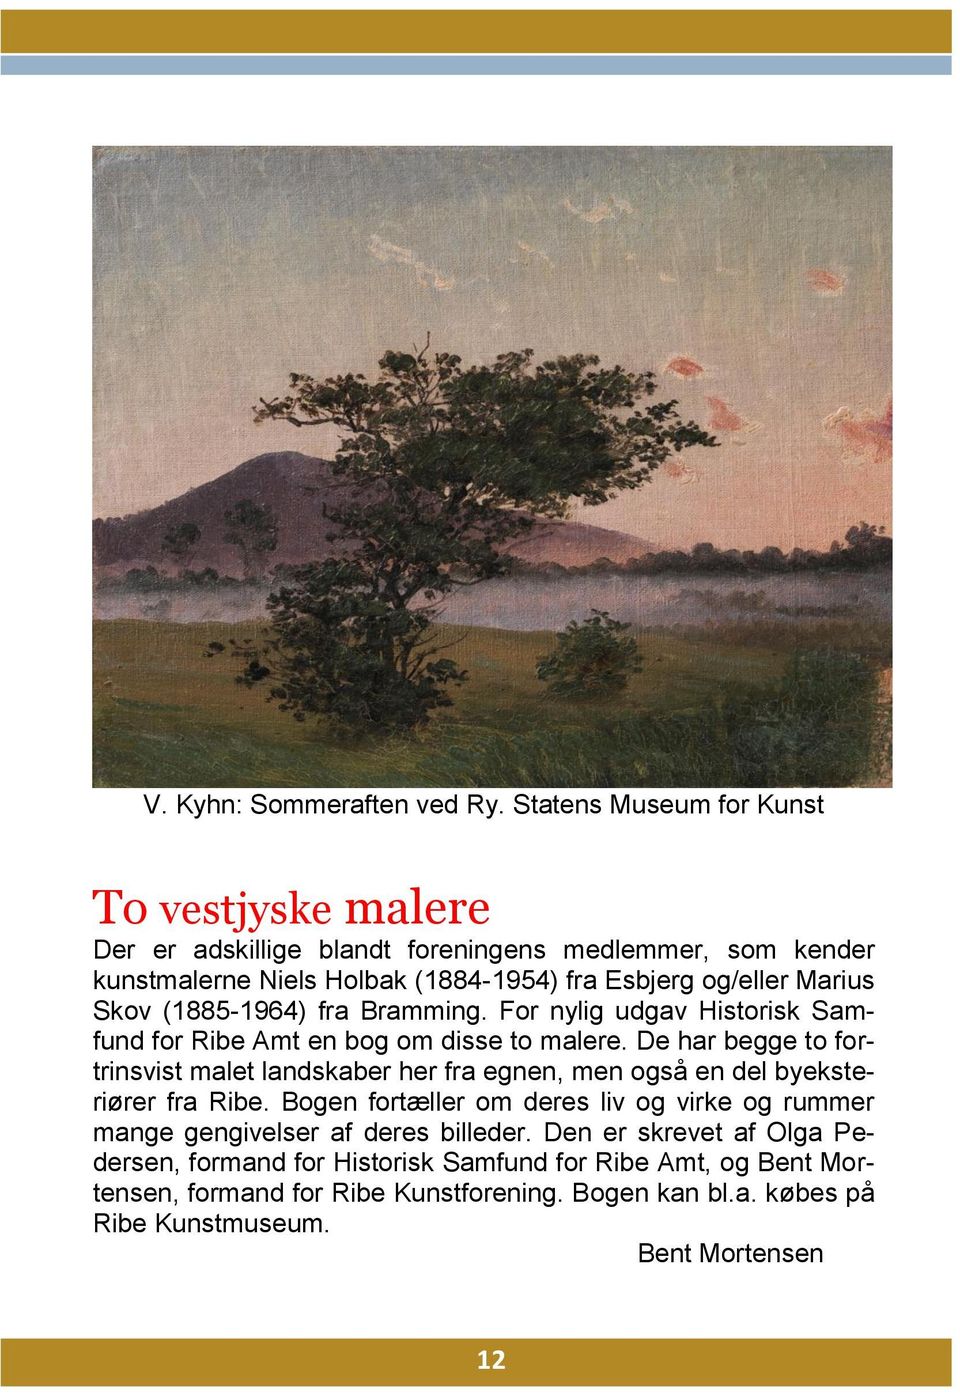 Skov (1885-1964) fra Bramming. For nylig udgav Historisk Samfund for Ribe Amt en bog om disse to malere.